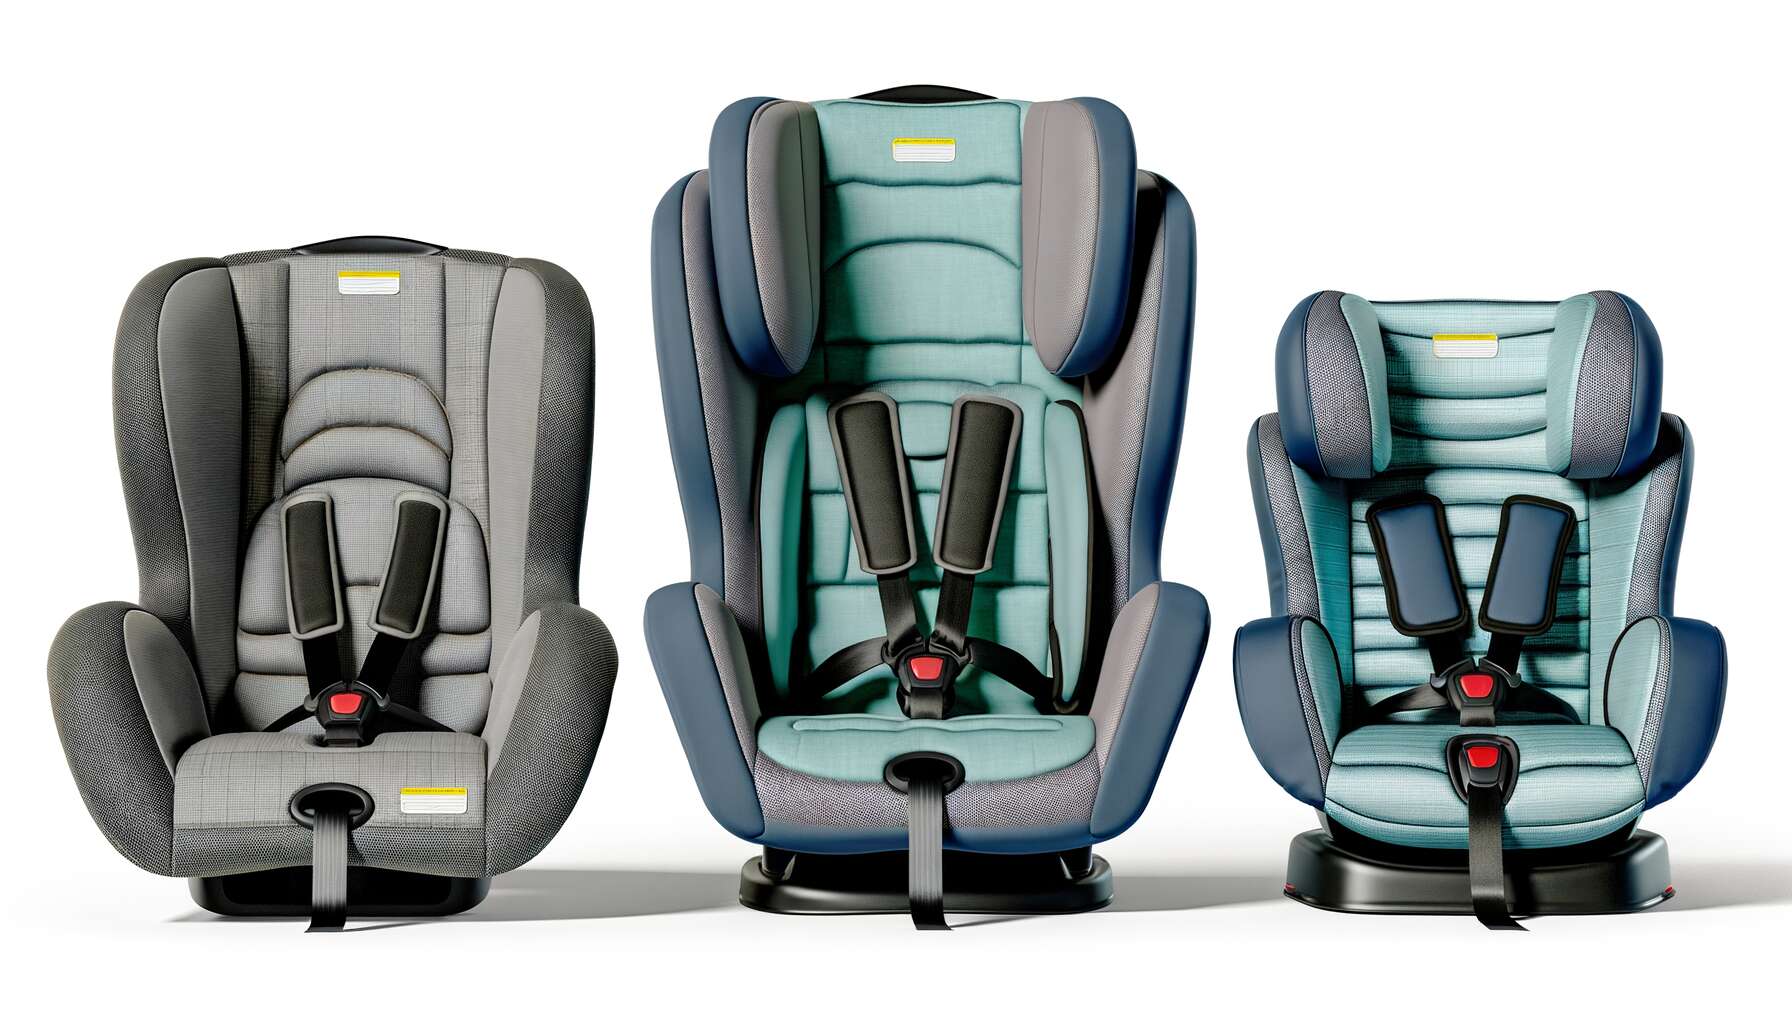 Critères d'achat : comment choisir le siège auto idéal pour votre enfant